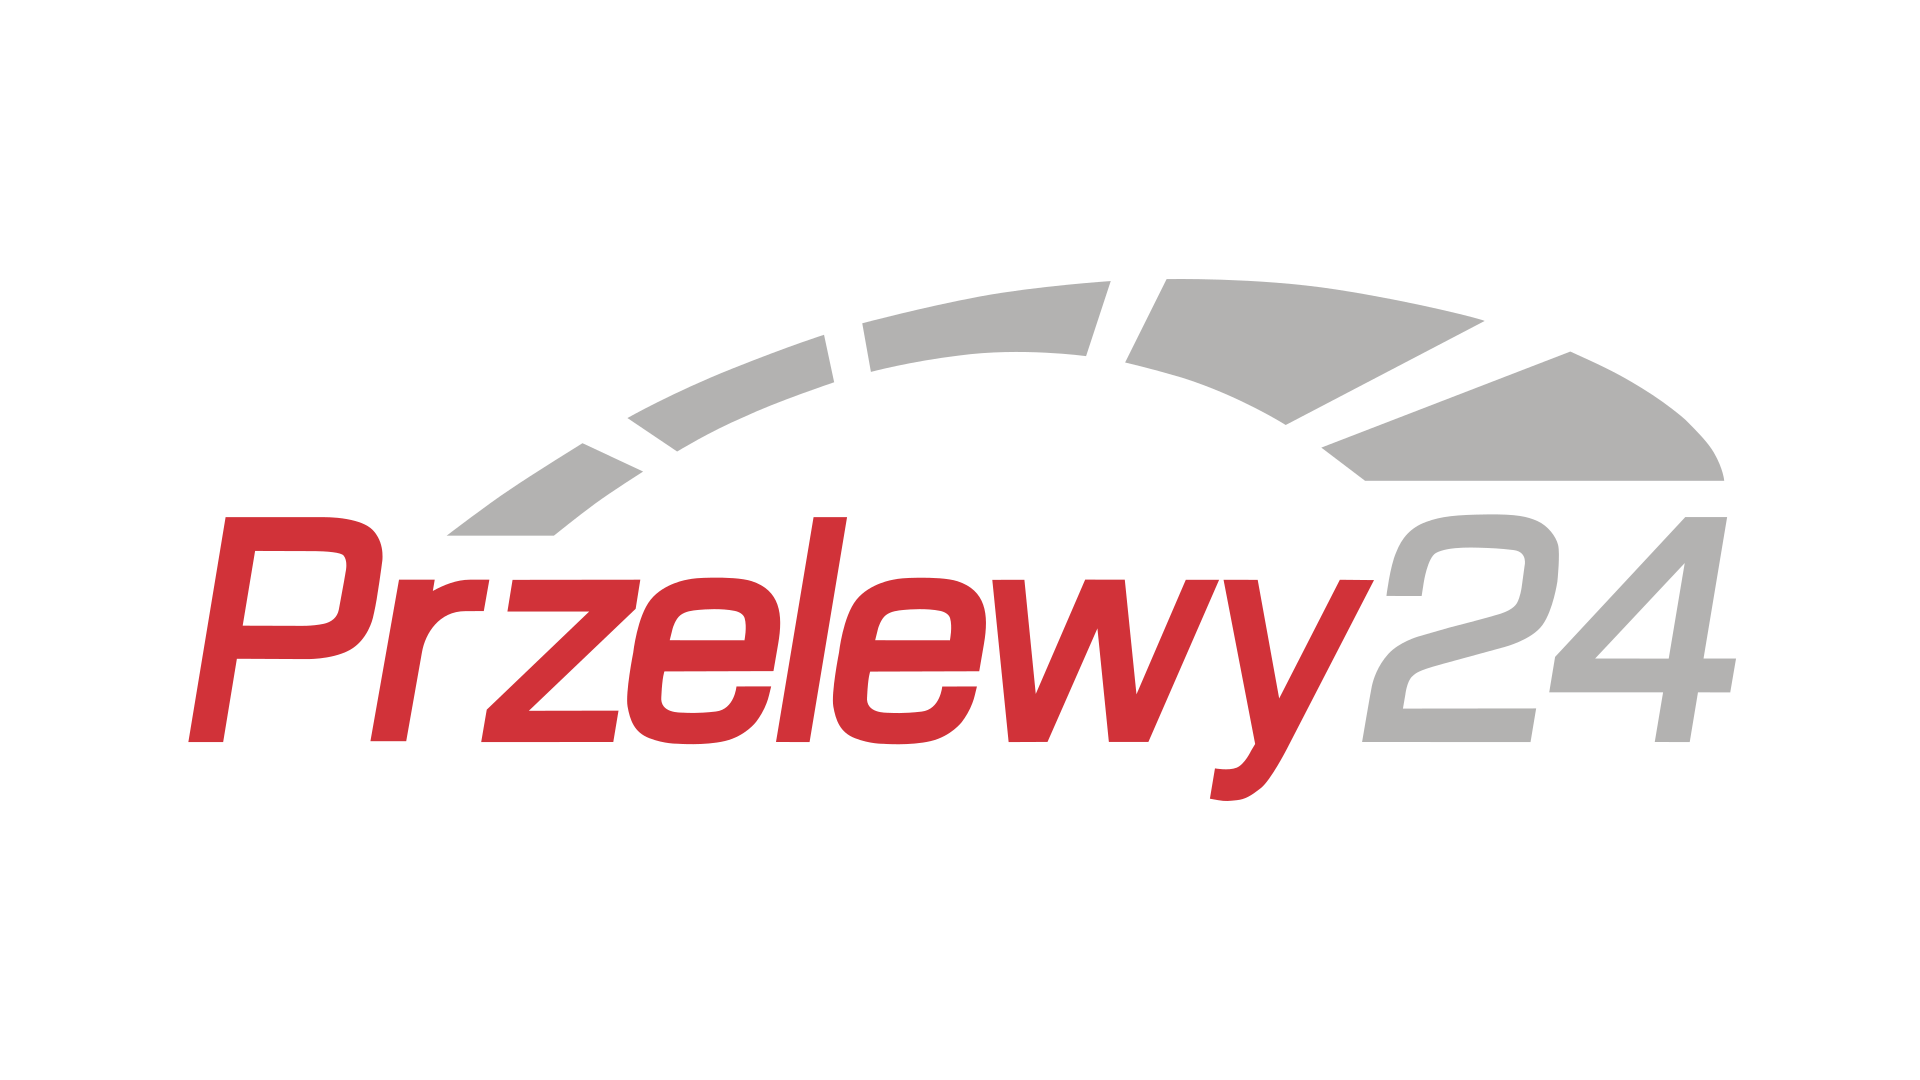 Przelewy24. 24 Логотип. Logo przelewy24. Лентв24 логотип.